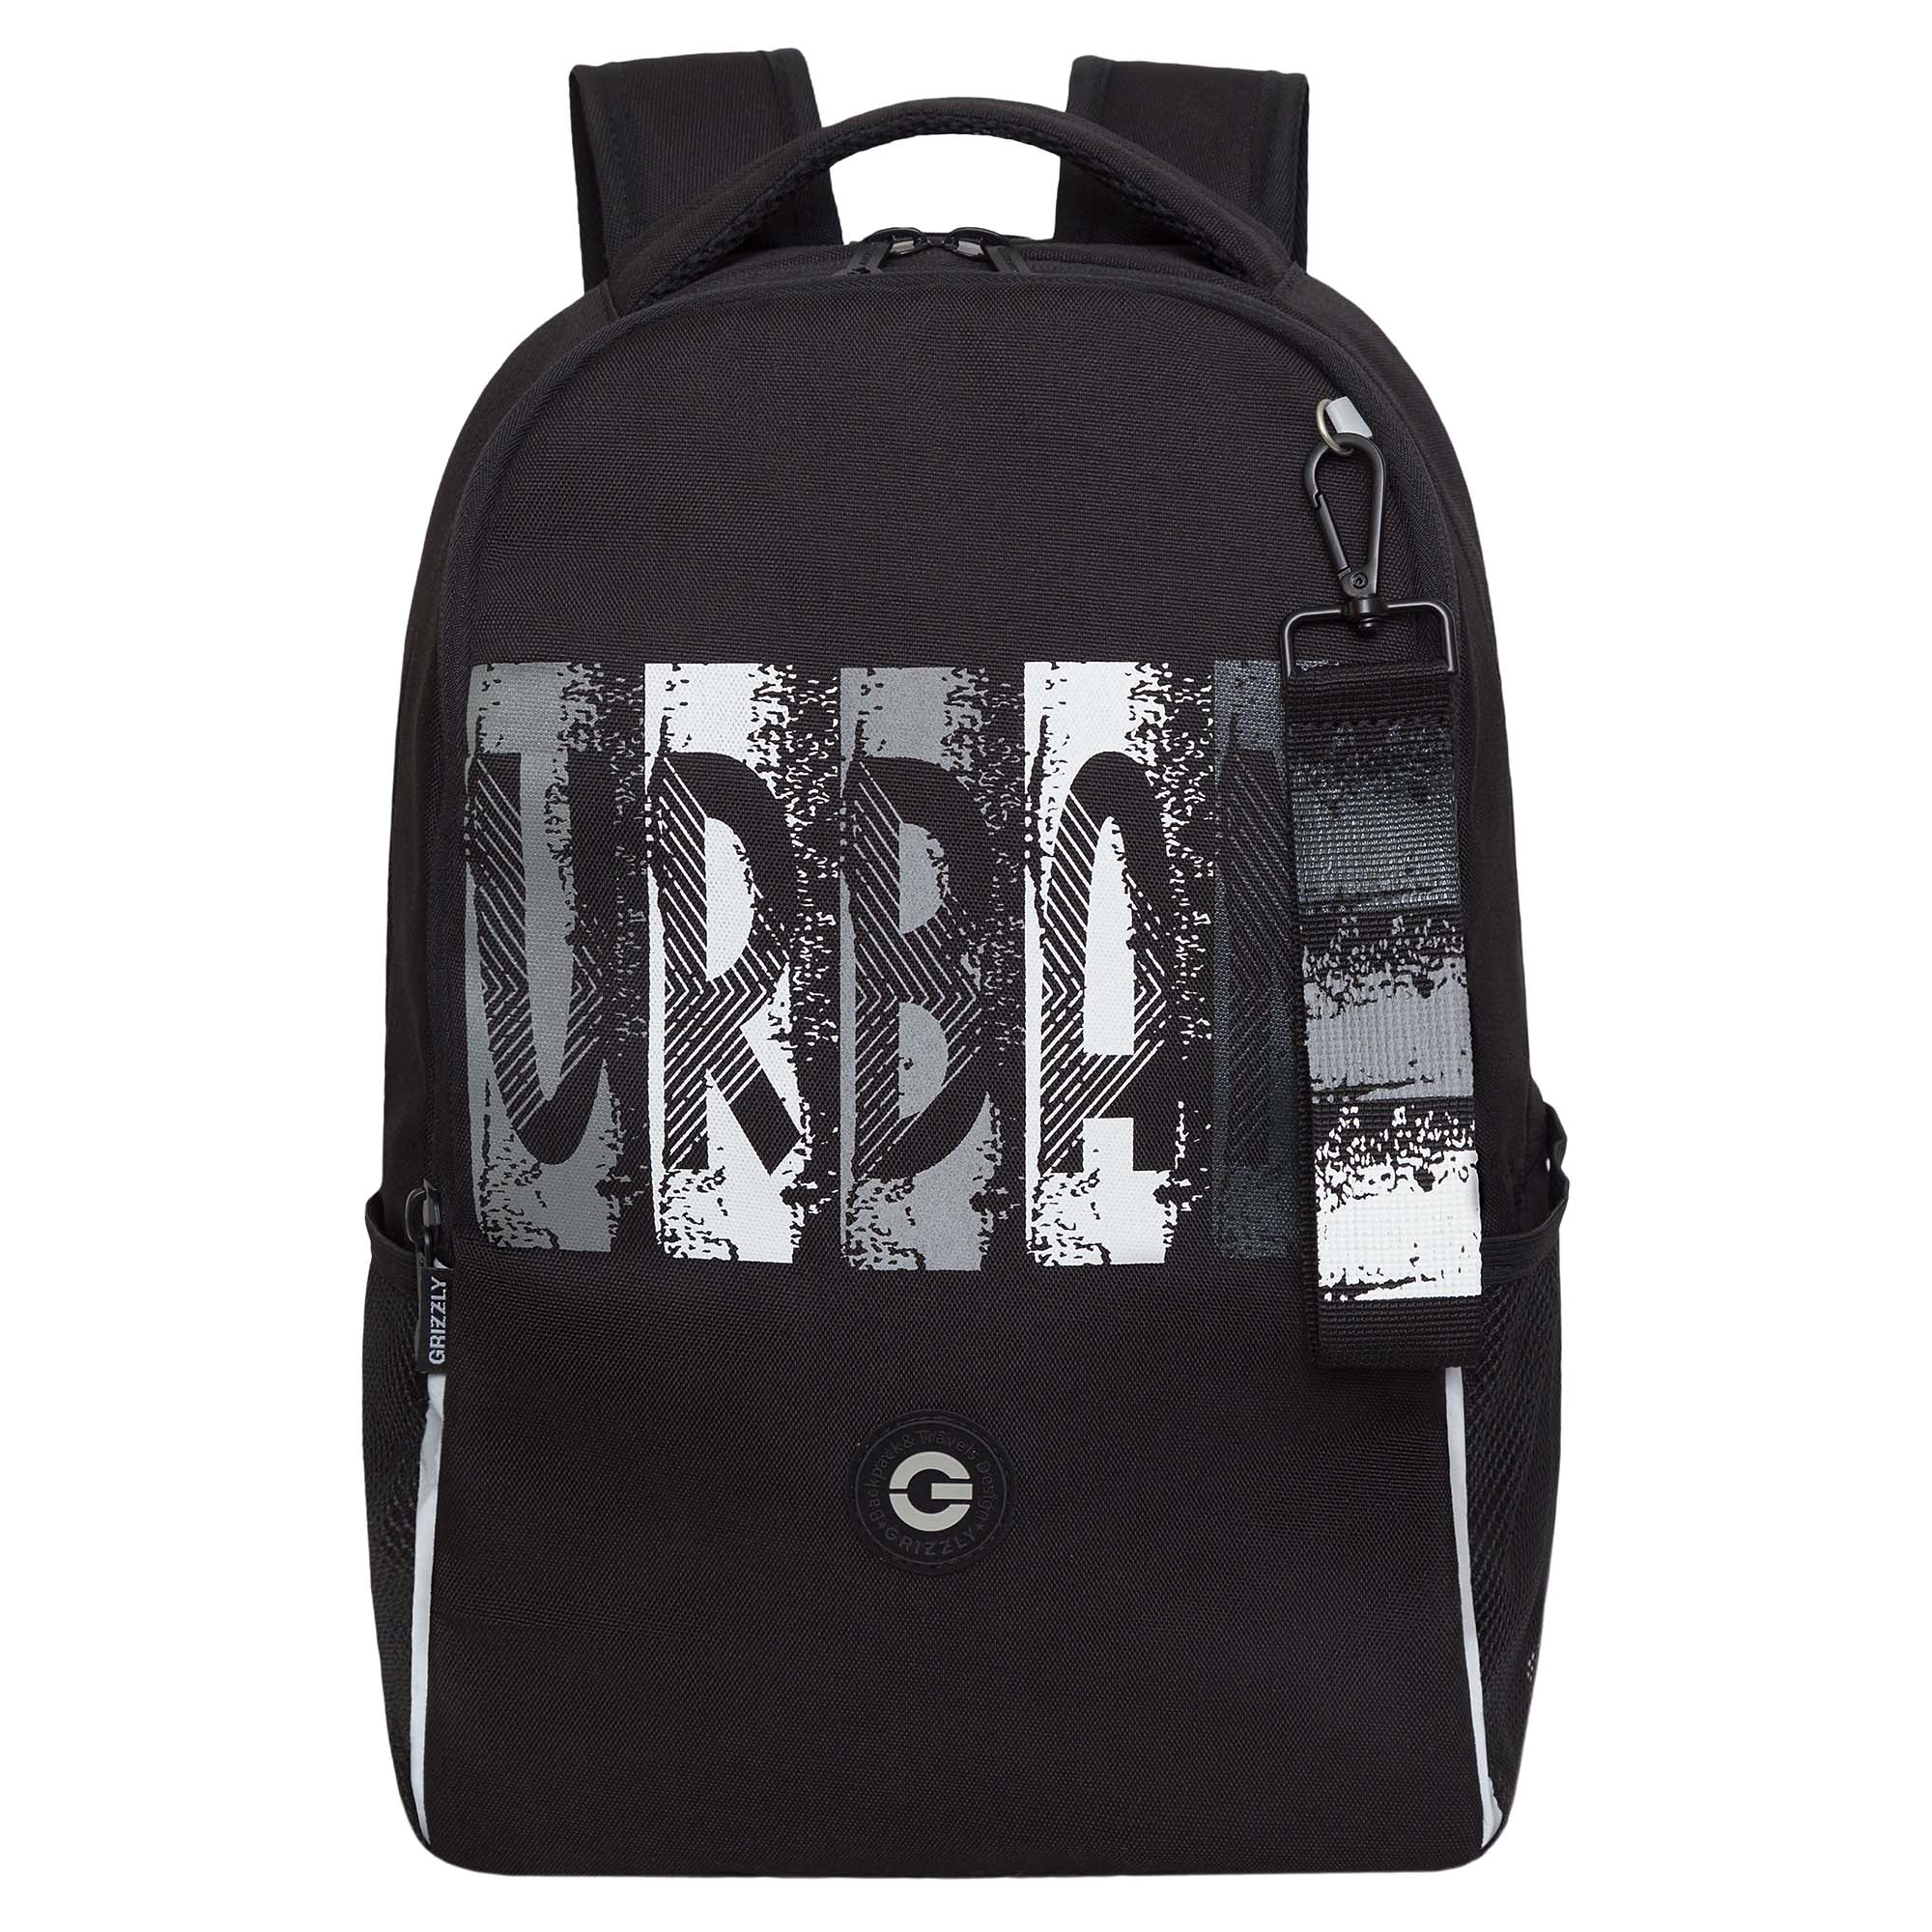 Рюкзак школьный GRIZZLY легкий с жесткой спинкой, 2 отделения, черный; серый, RB-451-3/2 рюкзак школьный grizzly с карманом для ноутбука 13 2 отделения для девочки rg 466 2 2